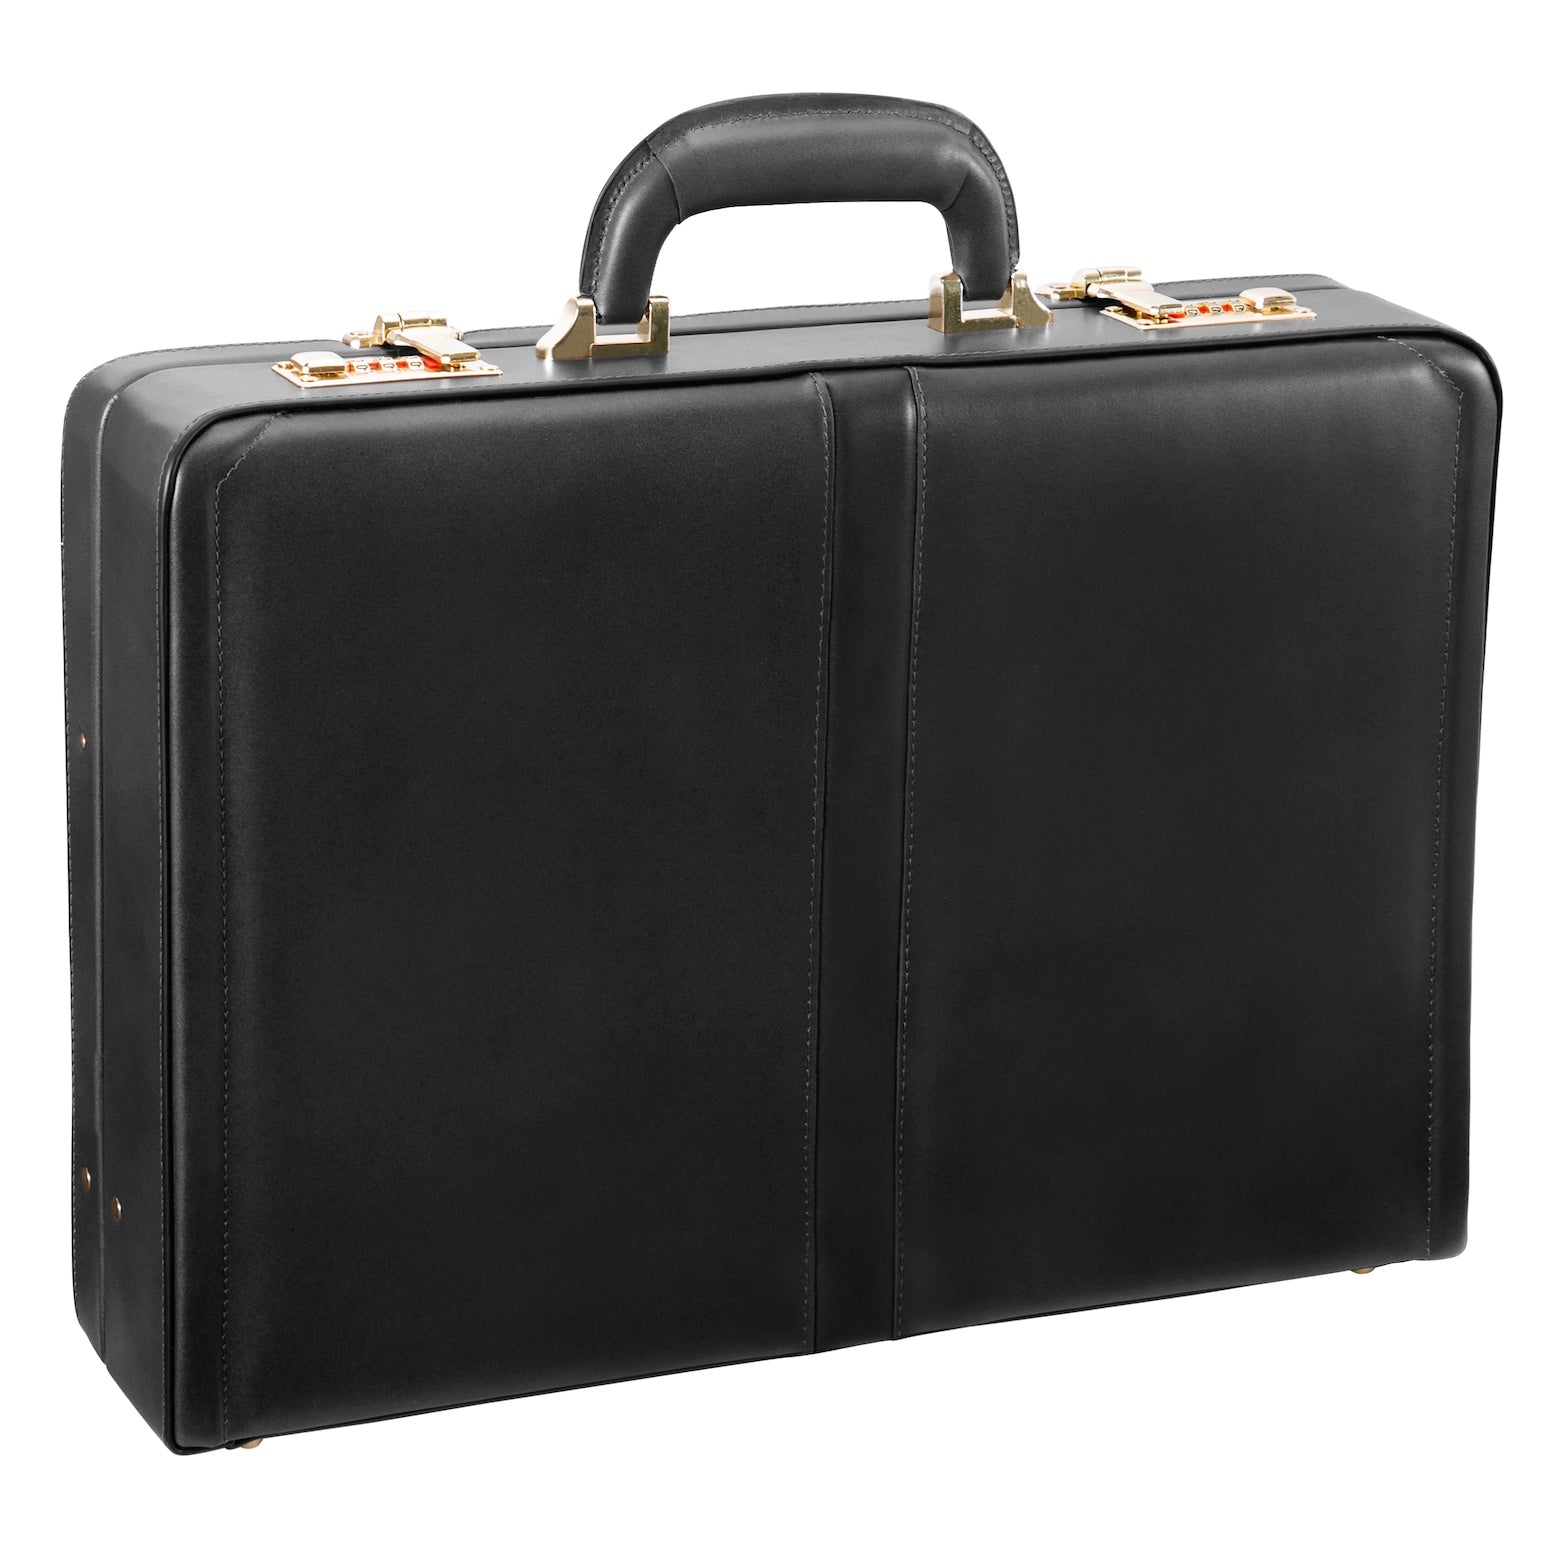 McKlein REAGAN Leather 3.5" Attaché Briefcase